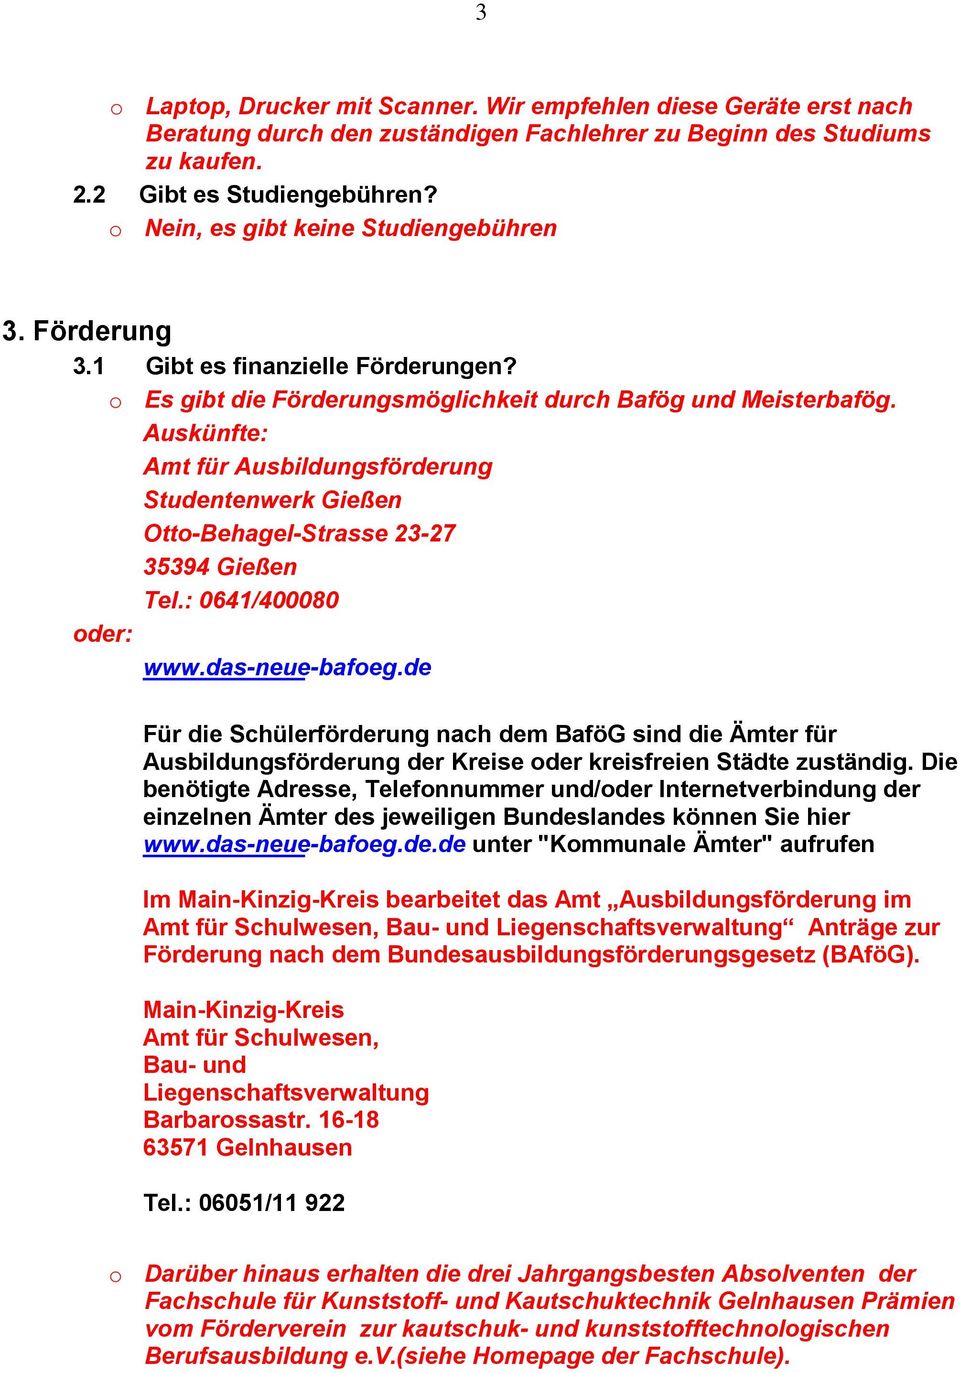 Auskünfte: Amt für Ausbildungsförderung Studentenwerk Gießen Otto-Behagel-Strasse 23-27 35394 Gießen Tel.: 0641/400080 oder: www.das-neue-bafoeg.